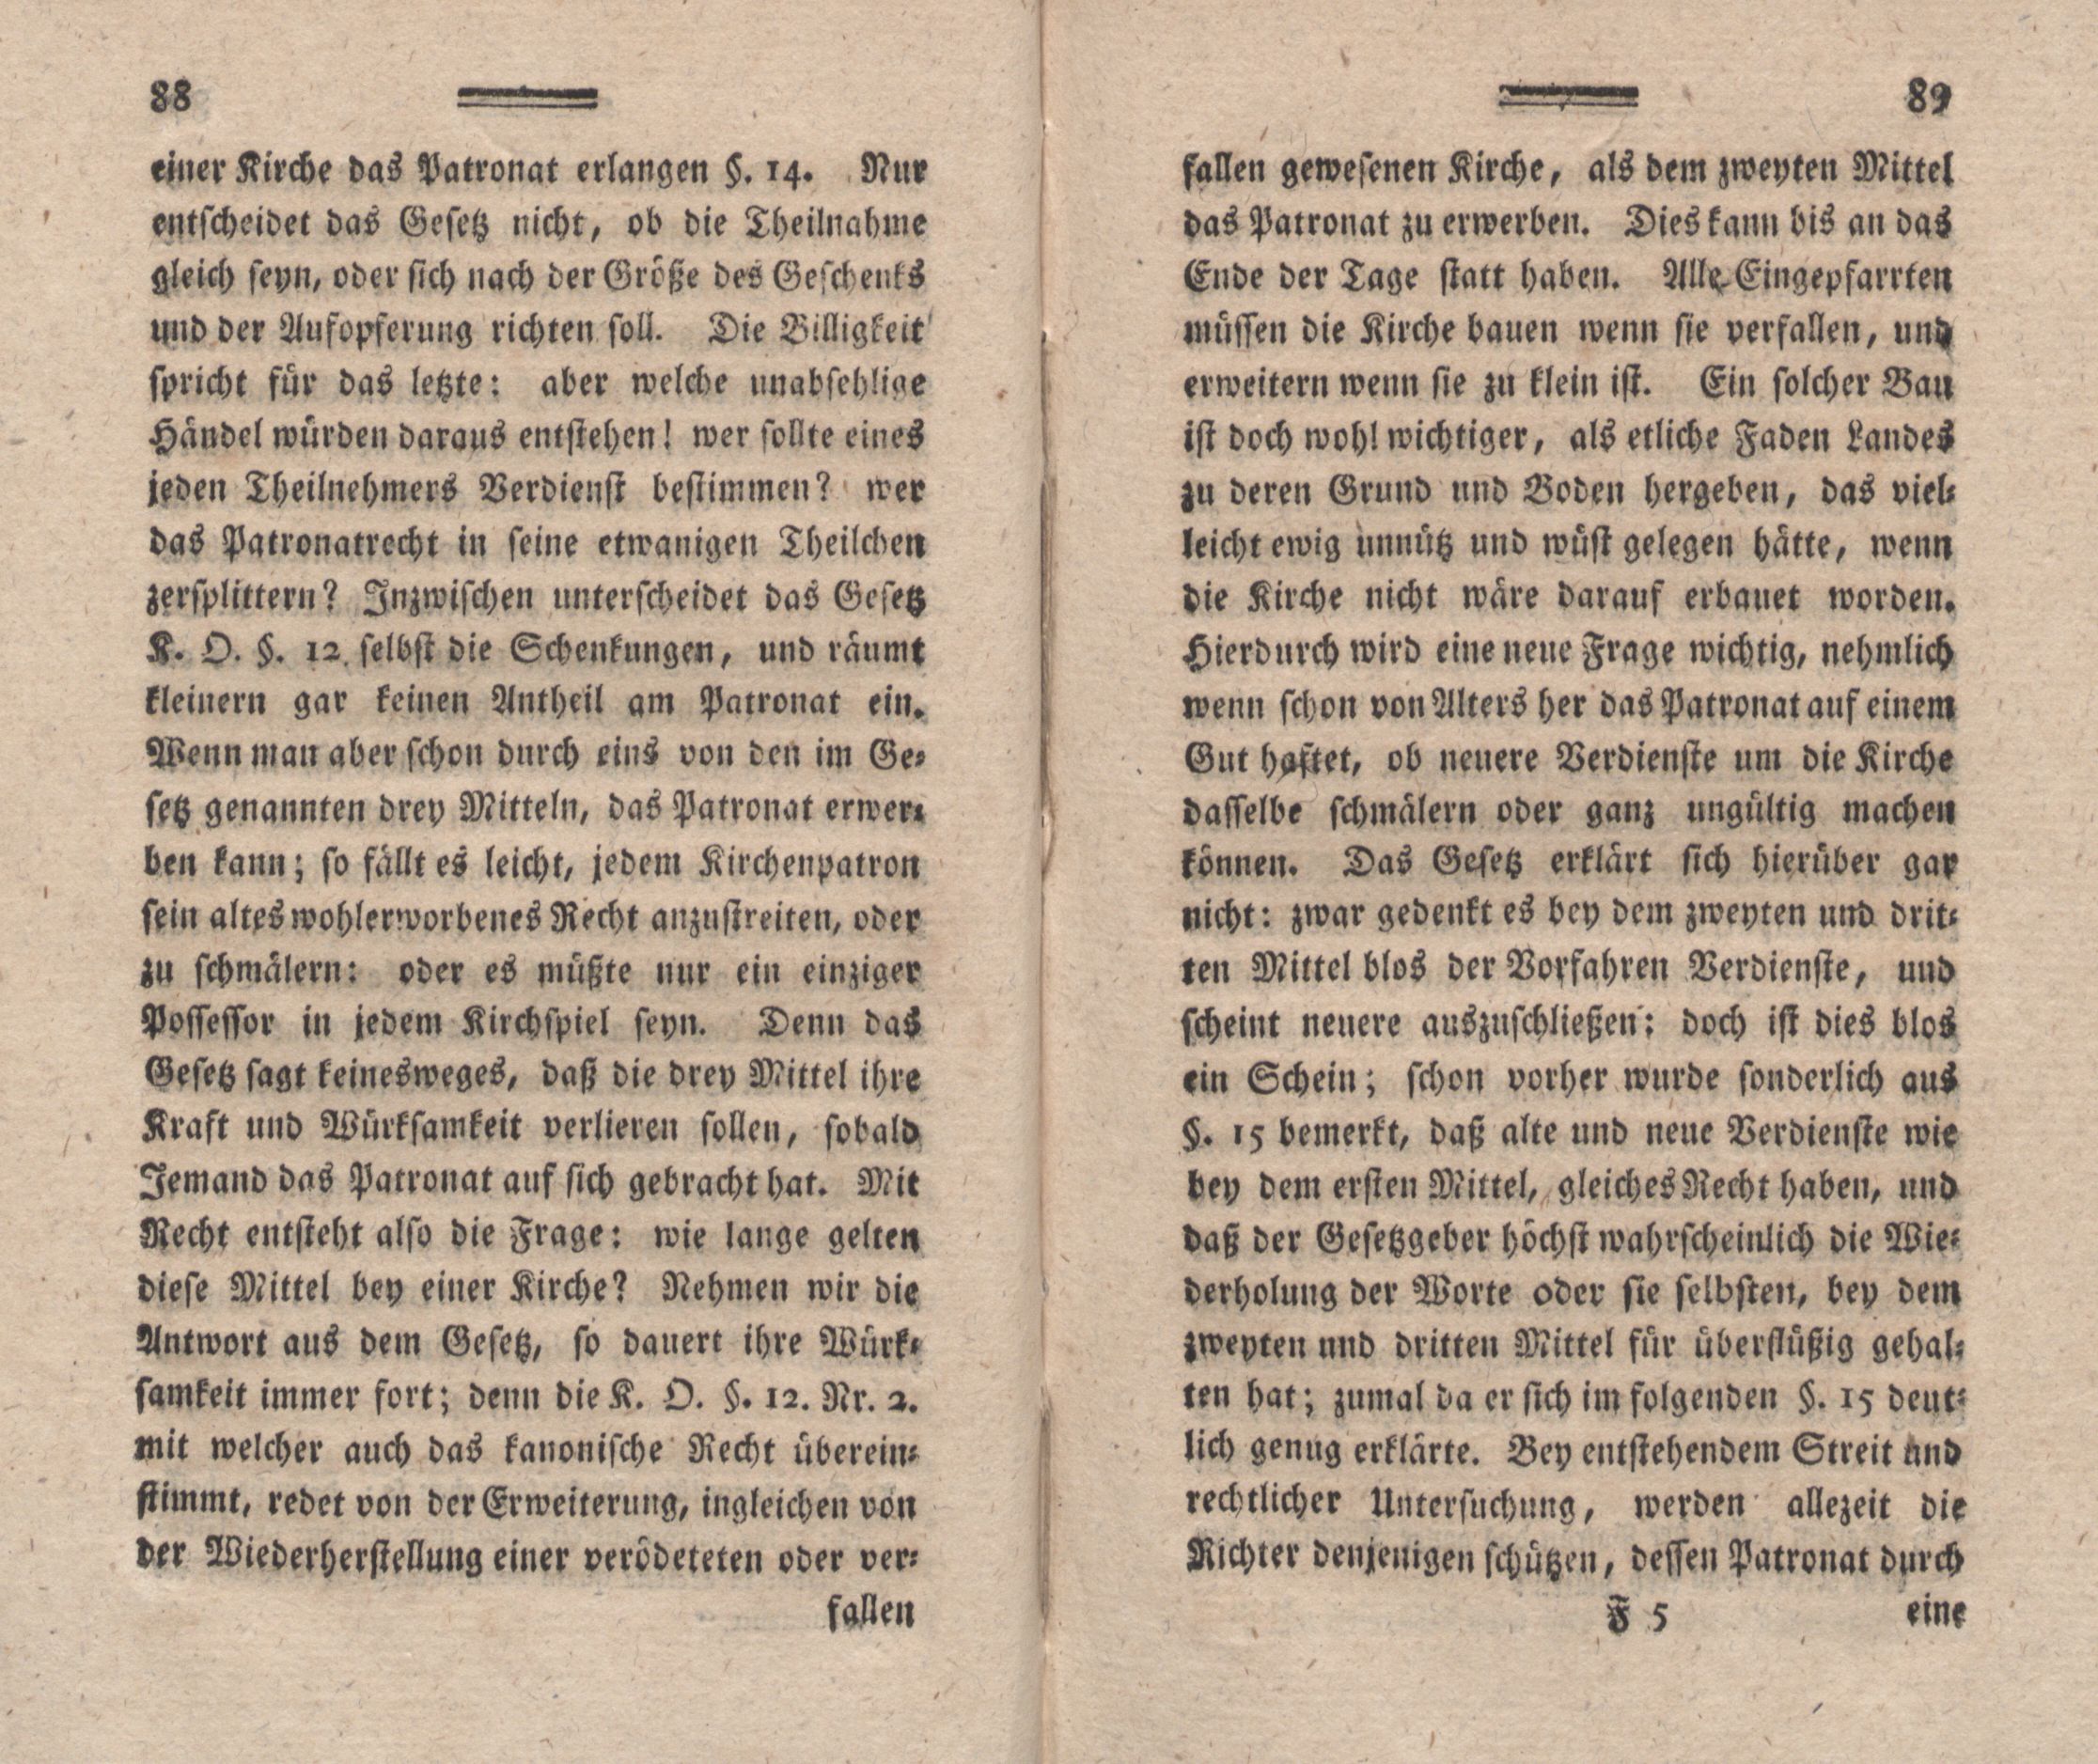 Nordische Miscellaneen [02] (1781) | 45. (88-89) Main body of text